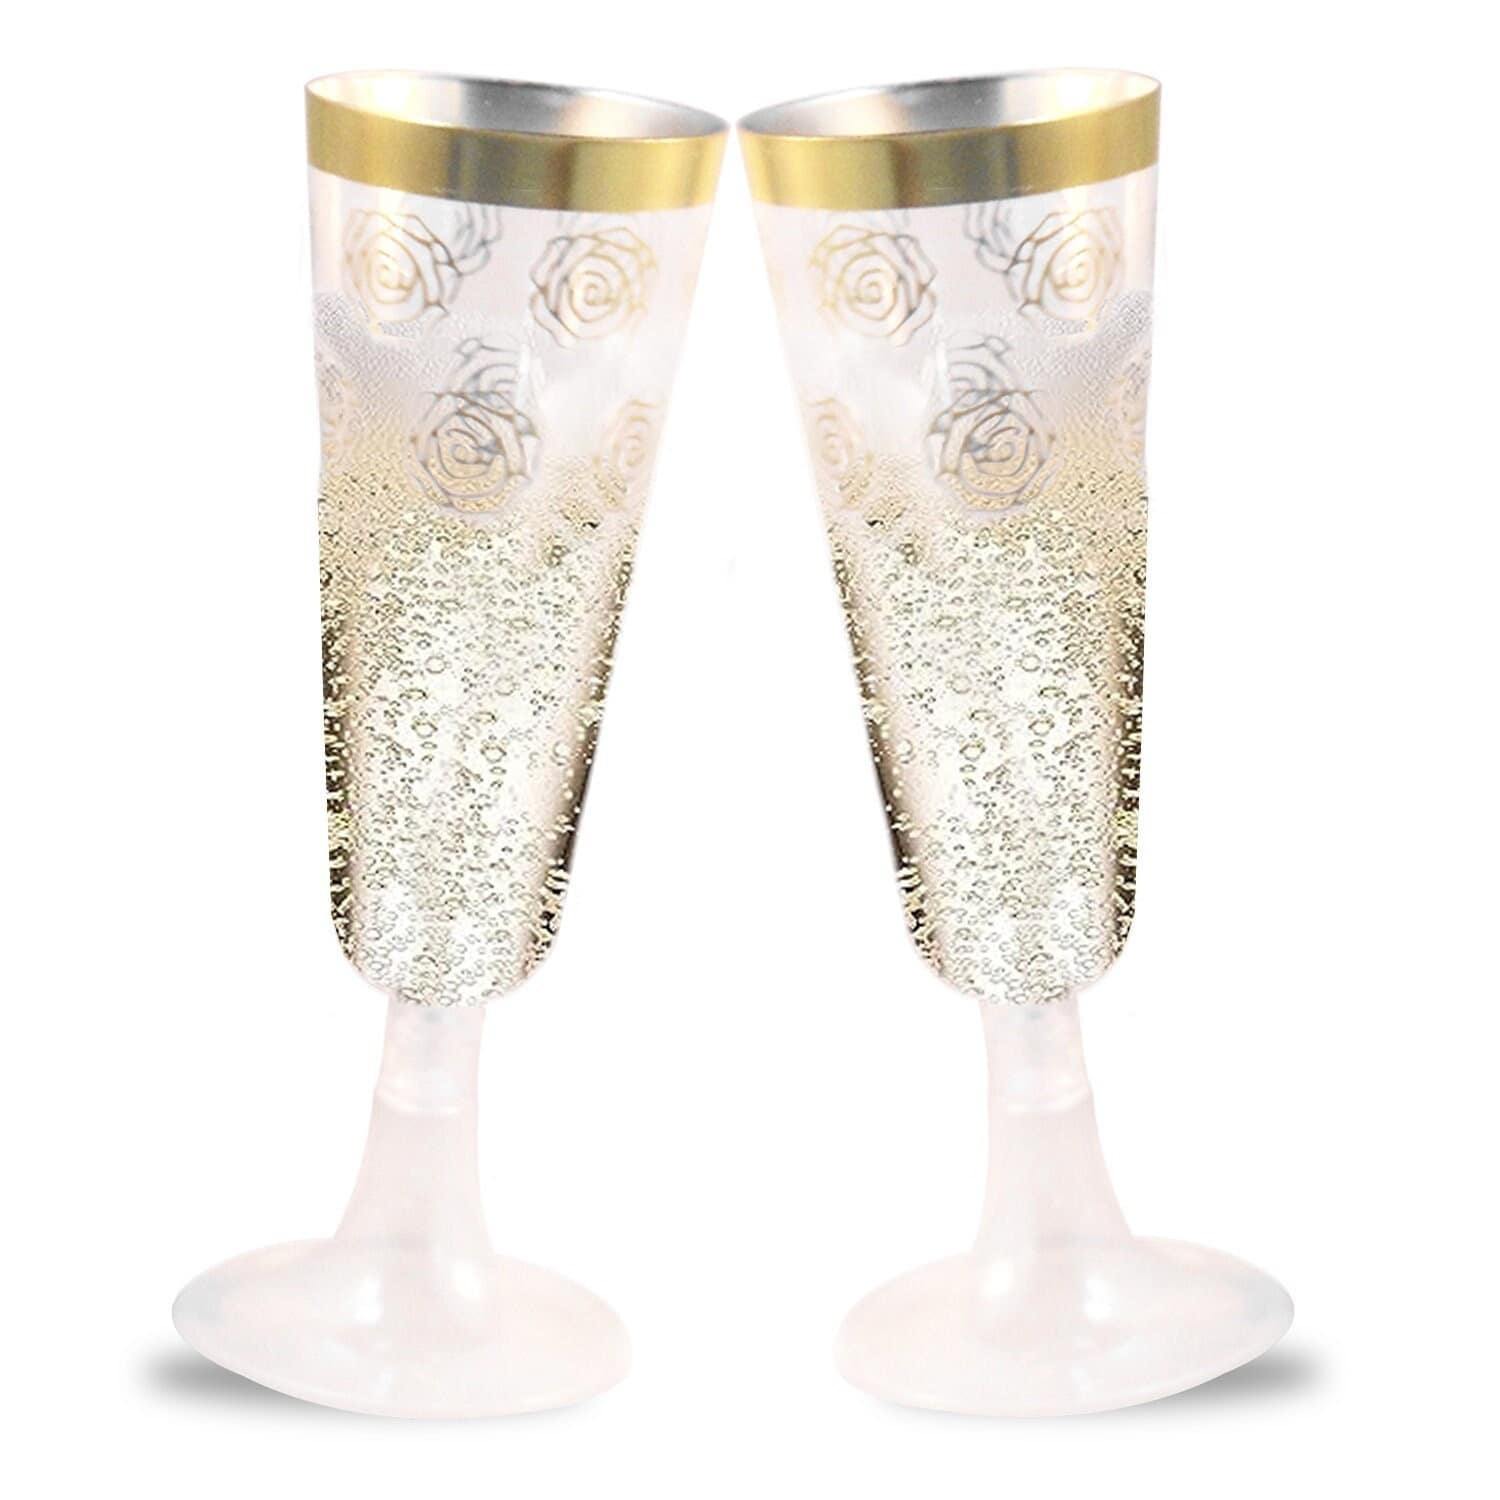 36 Plastic Champagne Flutes, 6.5 Oz Plastic Glasses Gold Rim & Glitter Gold  Mimosa Glasses, Brunch Decor, Plastic Flutes Champagne Disposable